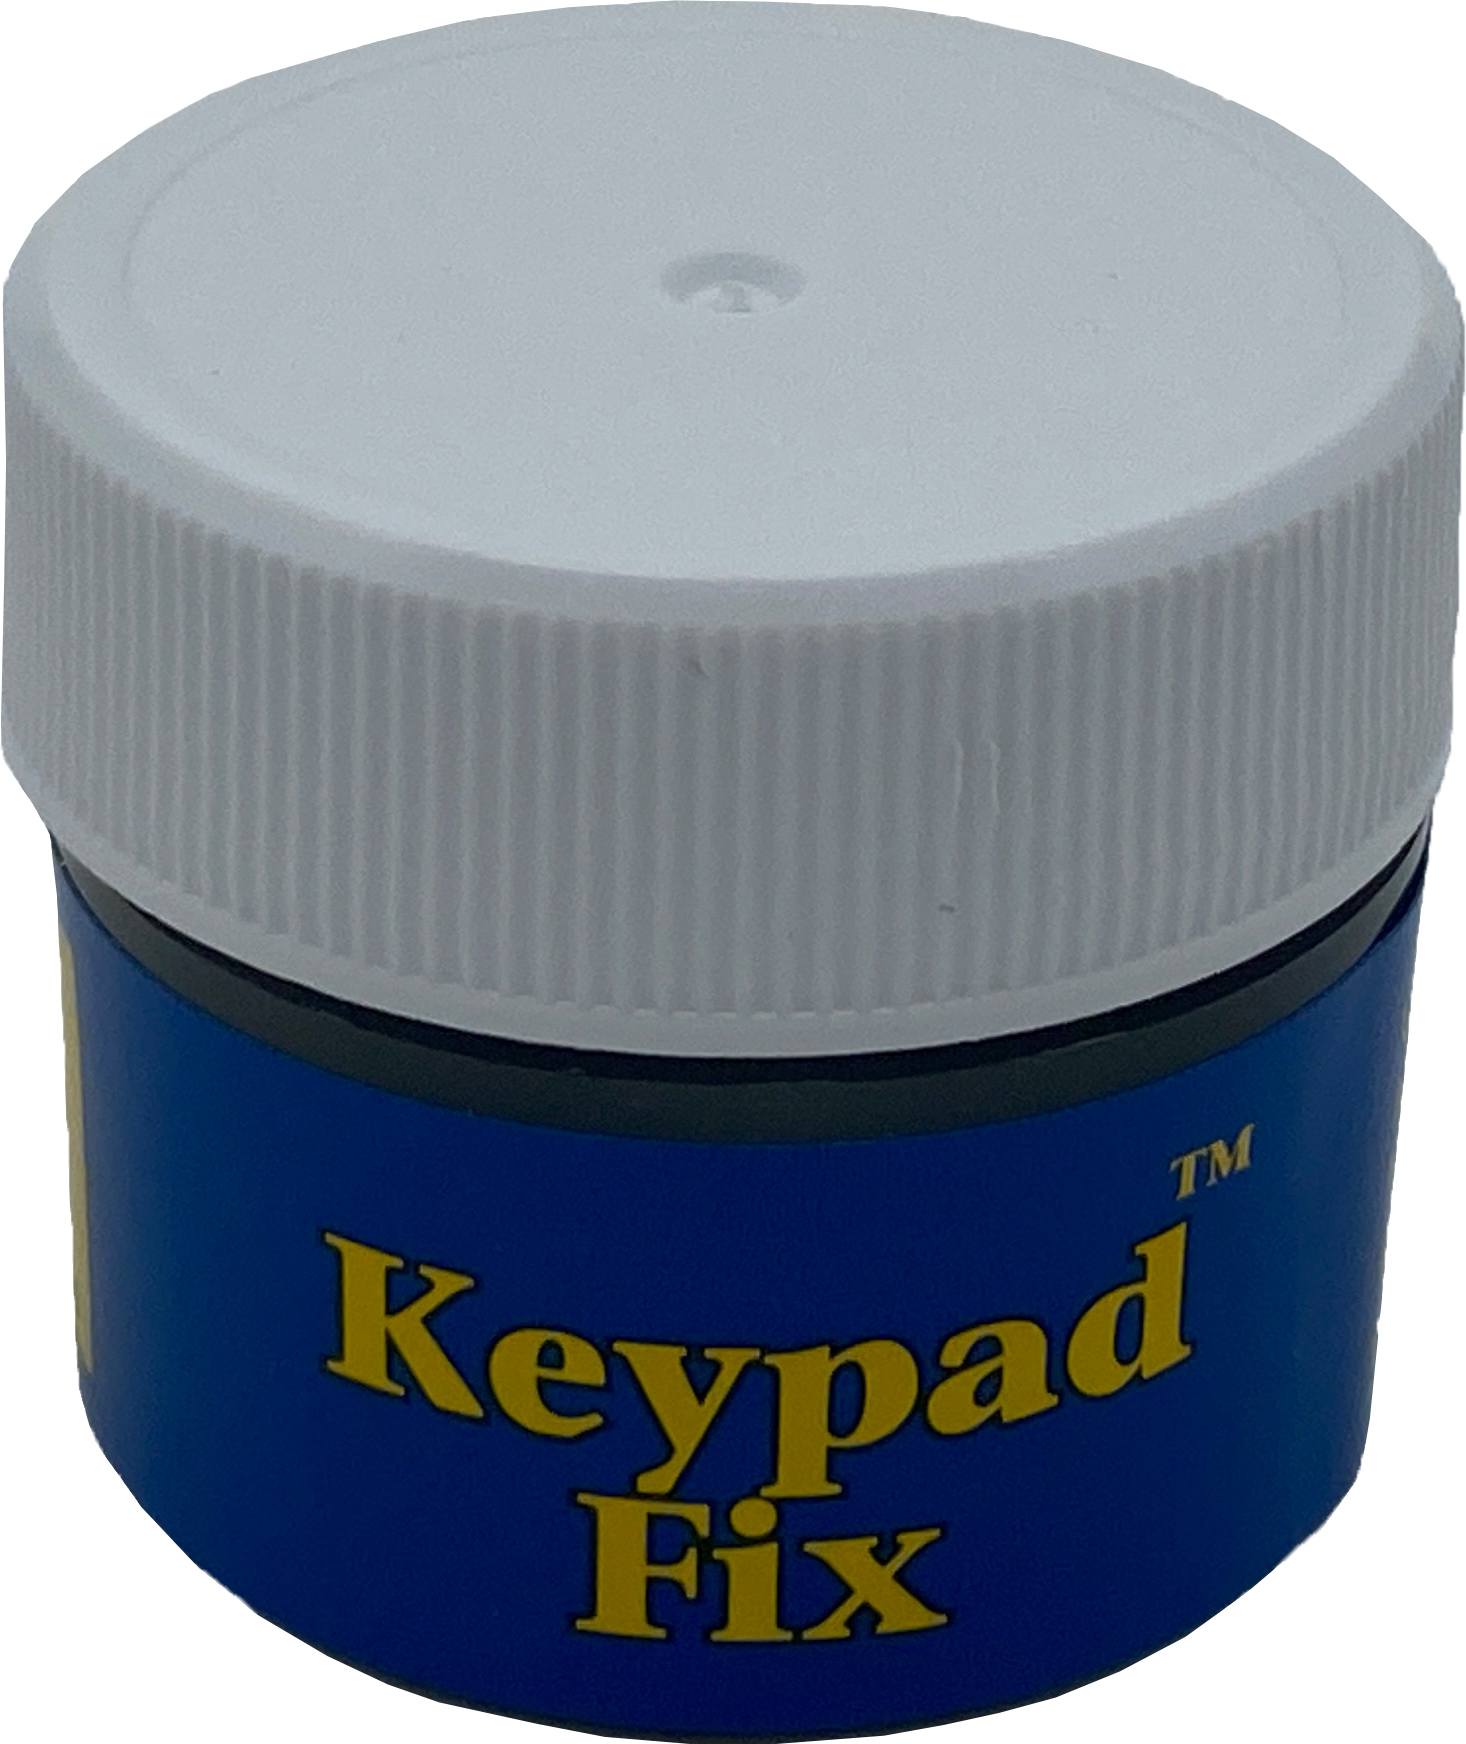 KeyPad fix für Elektronik 9ml